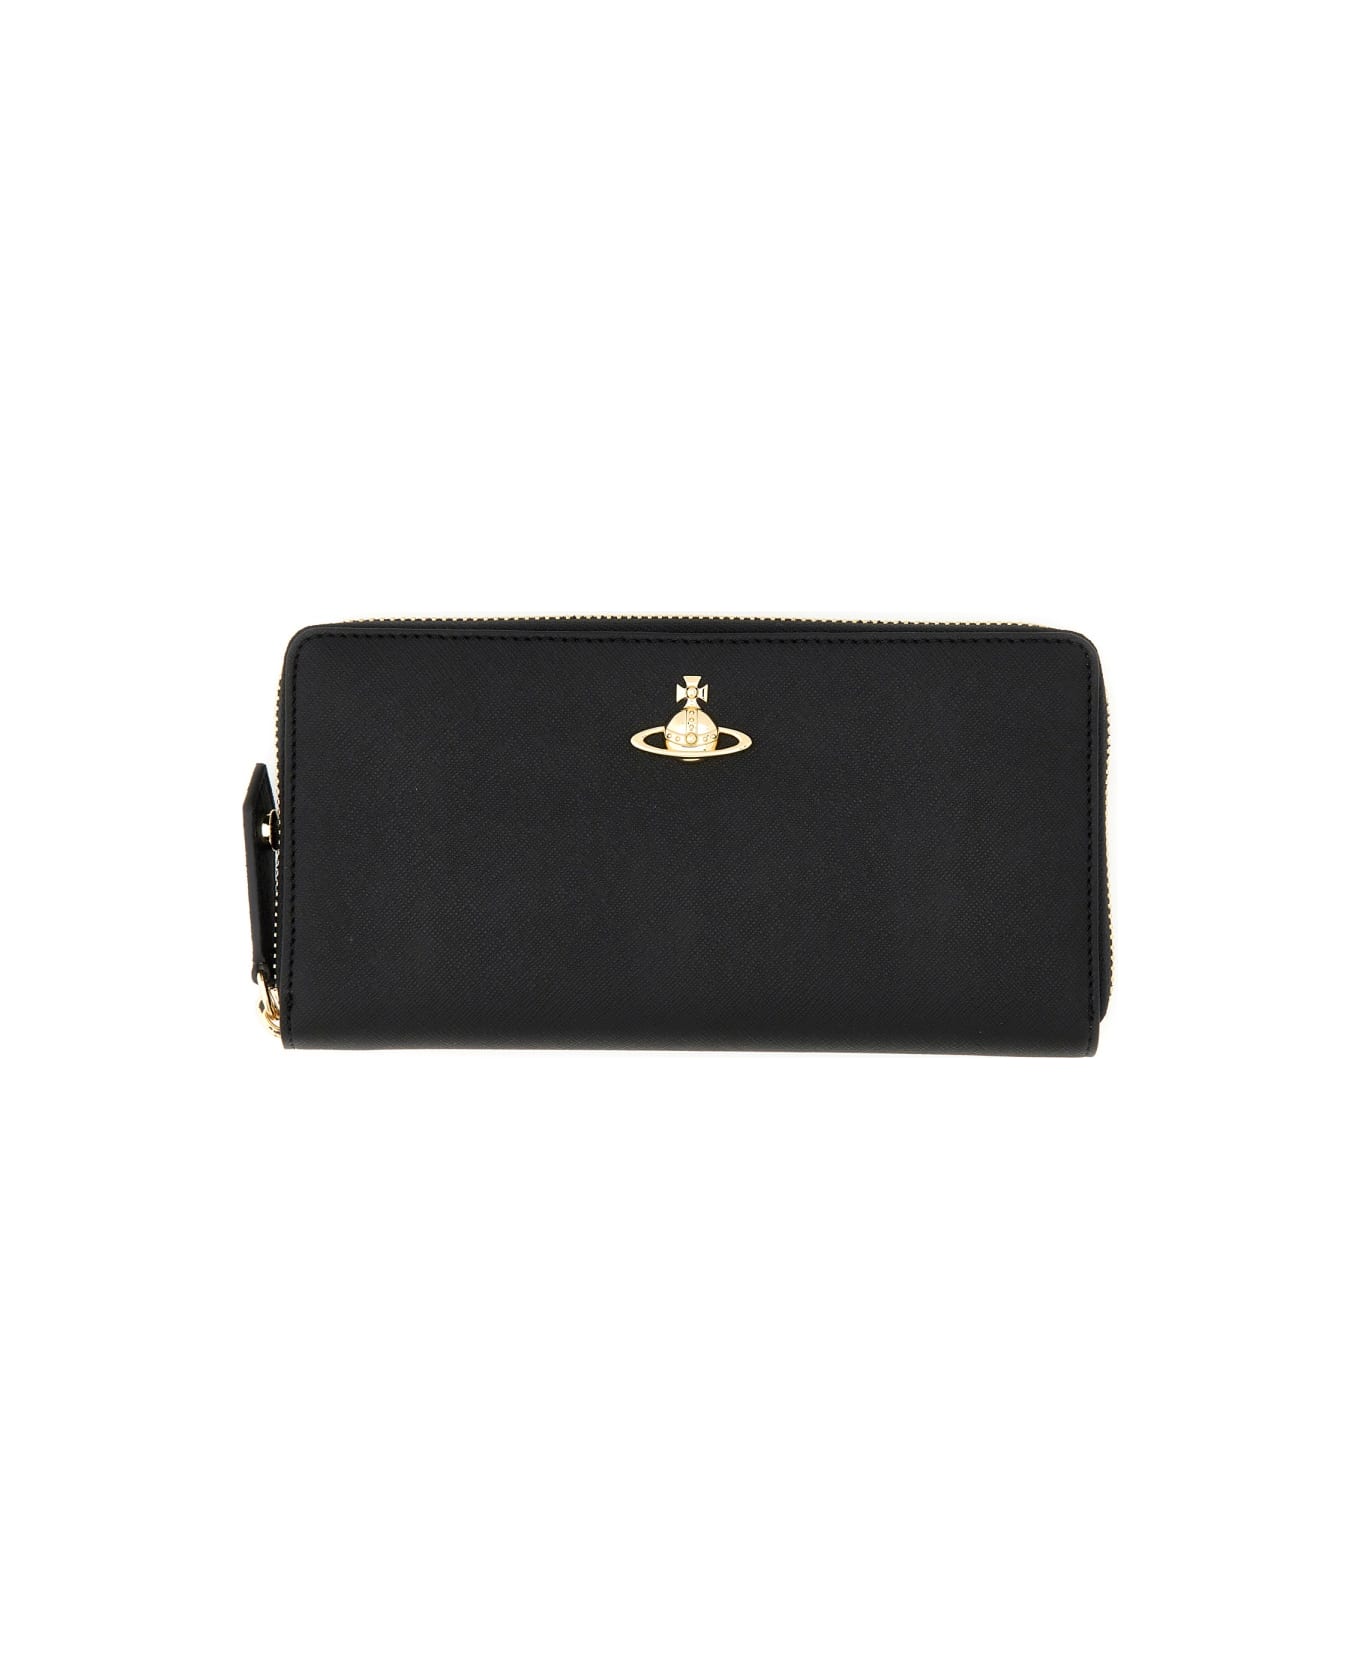 Vivienne Westwood Zipped Wallet - BLACK